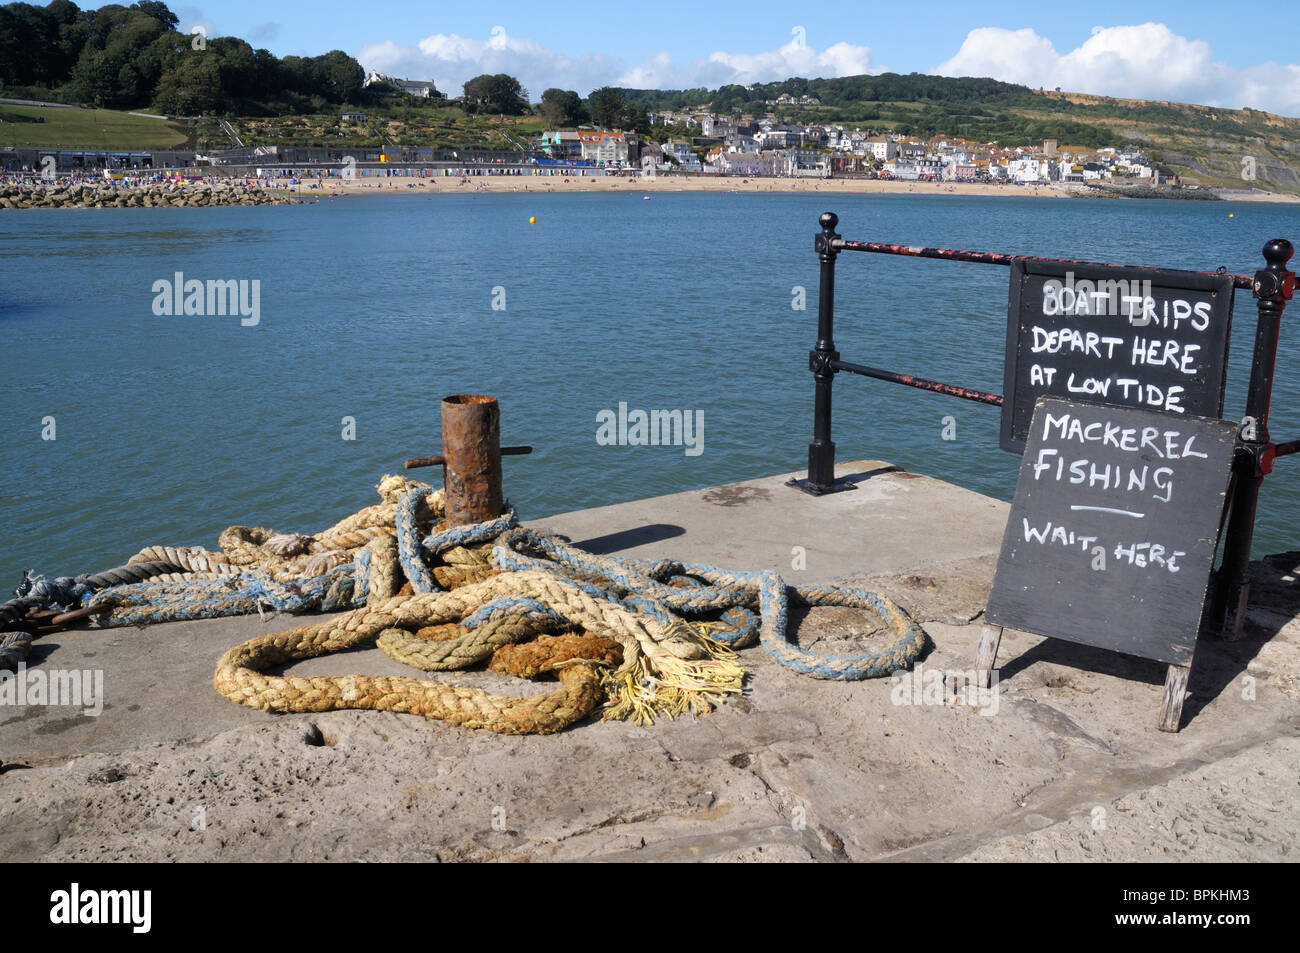 Carteles de publicidad viajes en barco y pesca caballa en Lyme Regis, Dorset Foto de stock